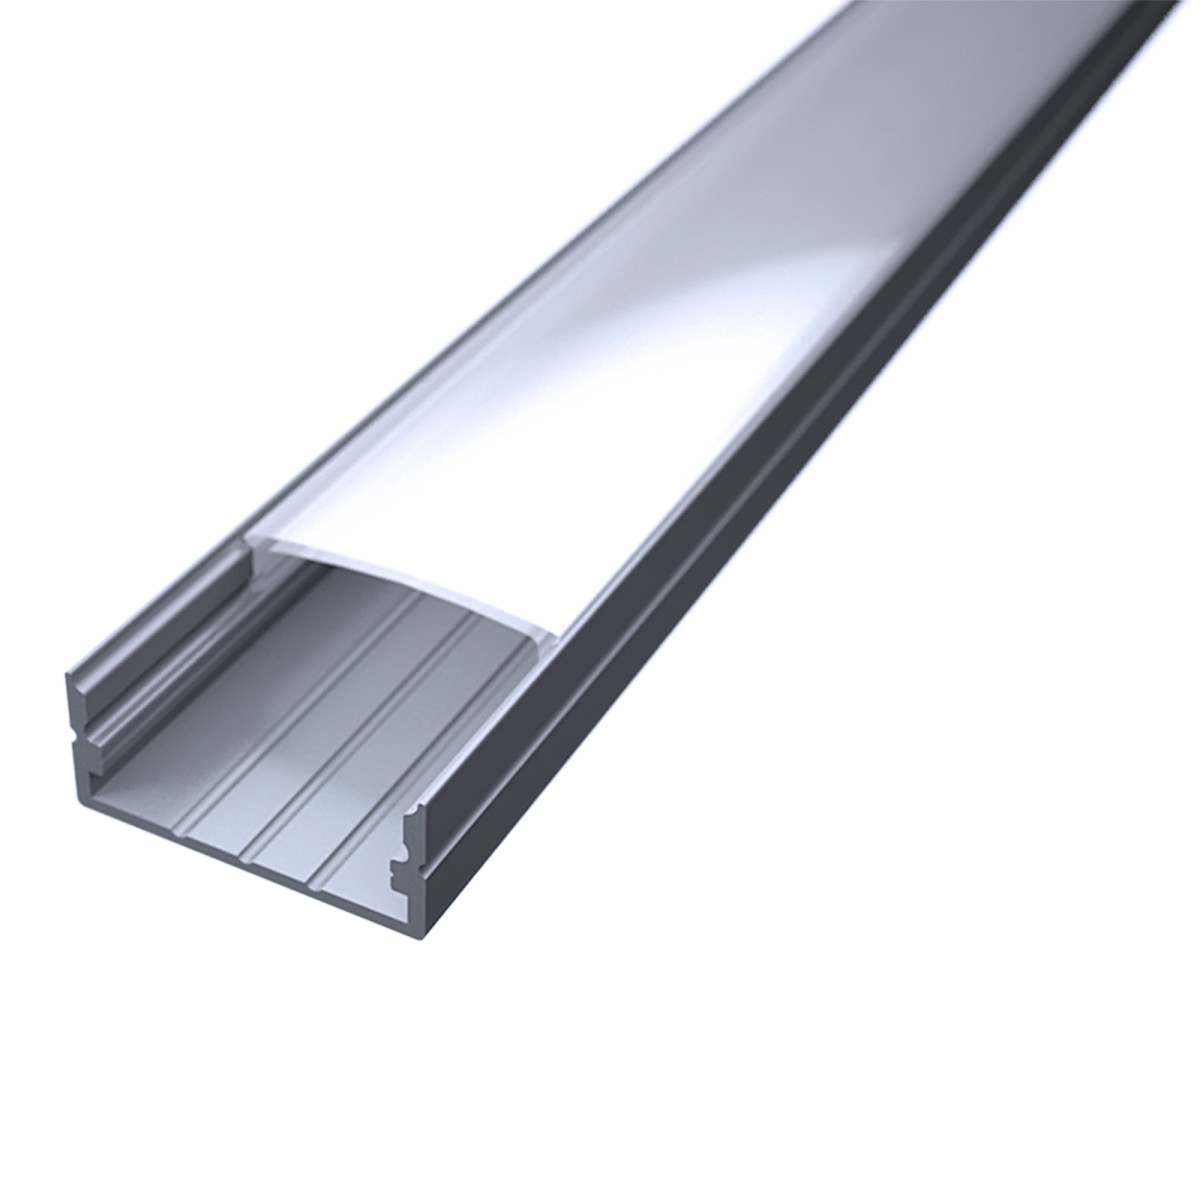 LED Flachprofil "Slim-Line max" | Abdeckung diffus | Zuschnitt auf 129cm |